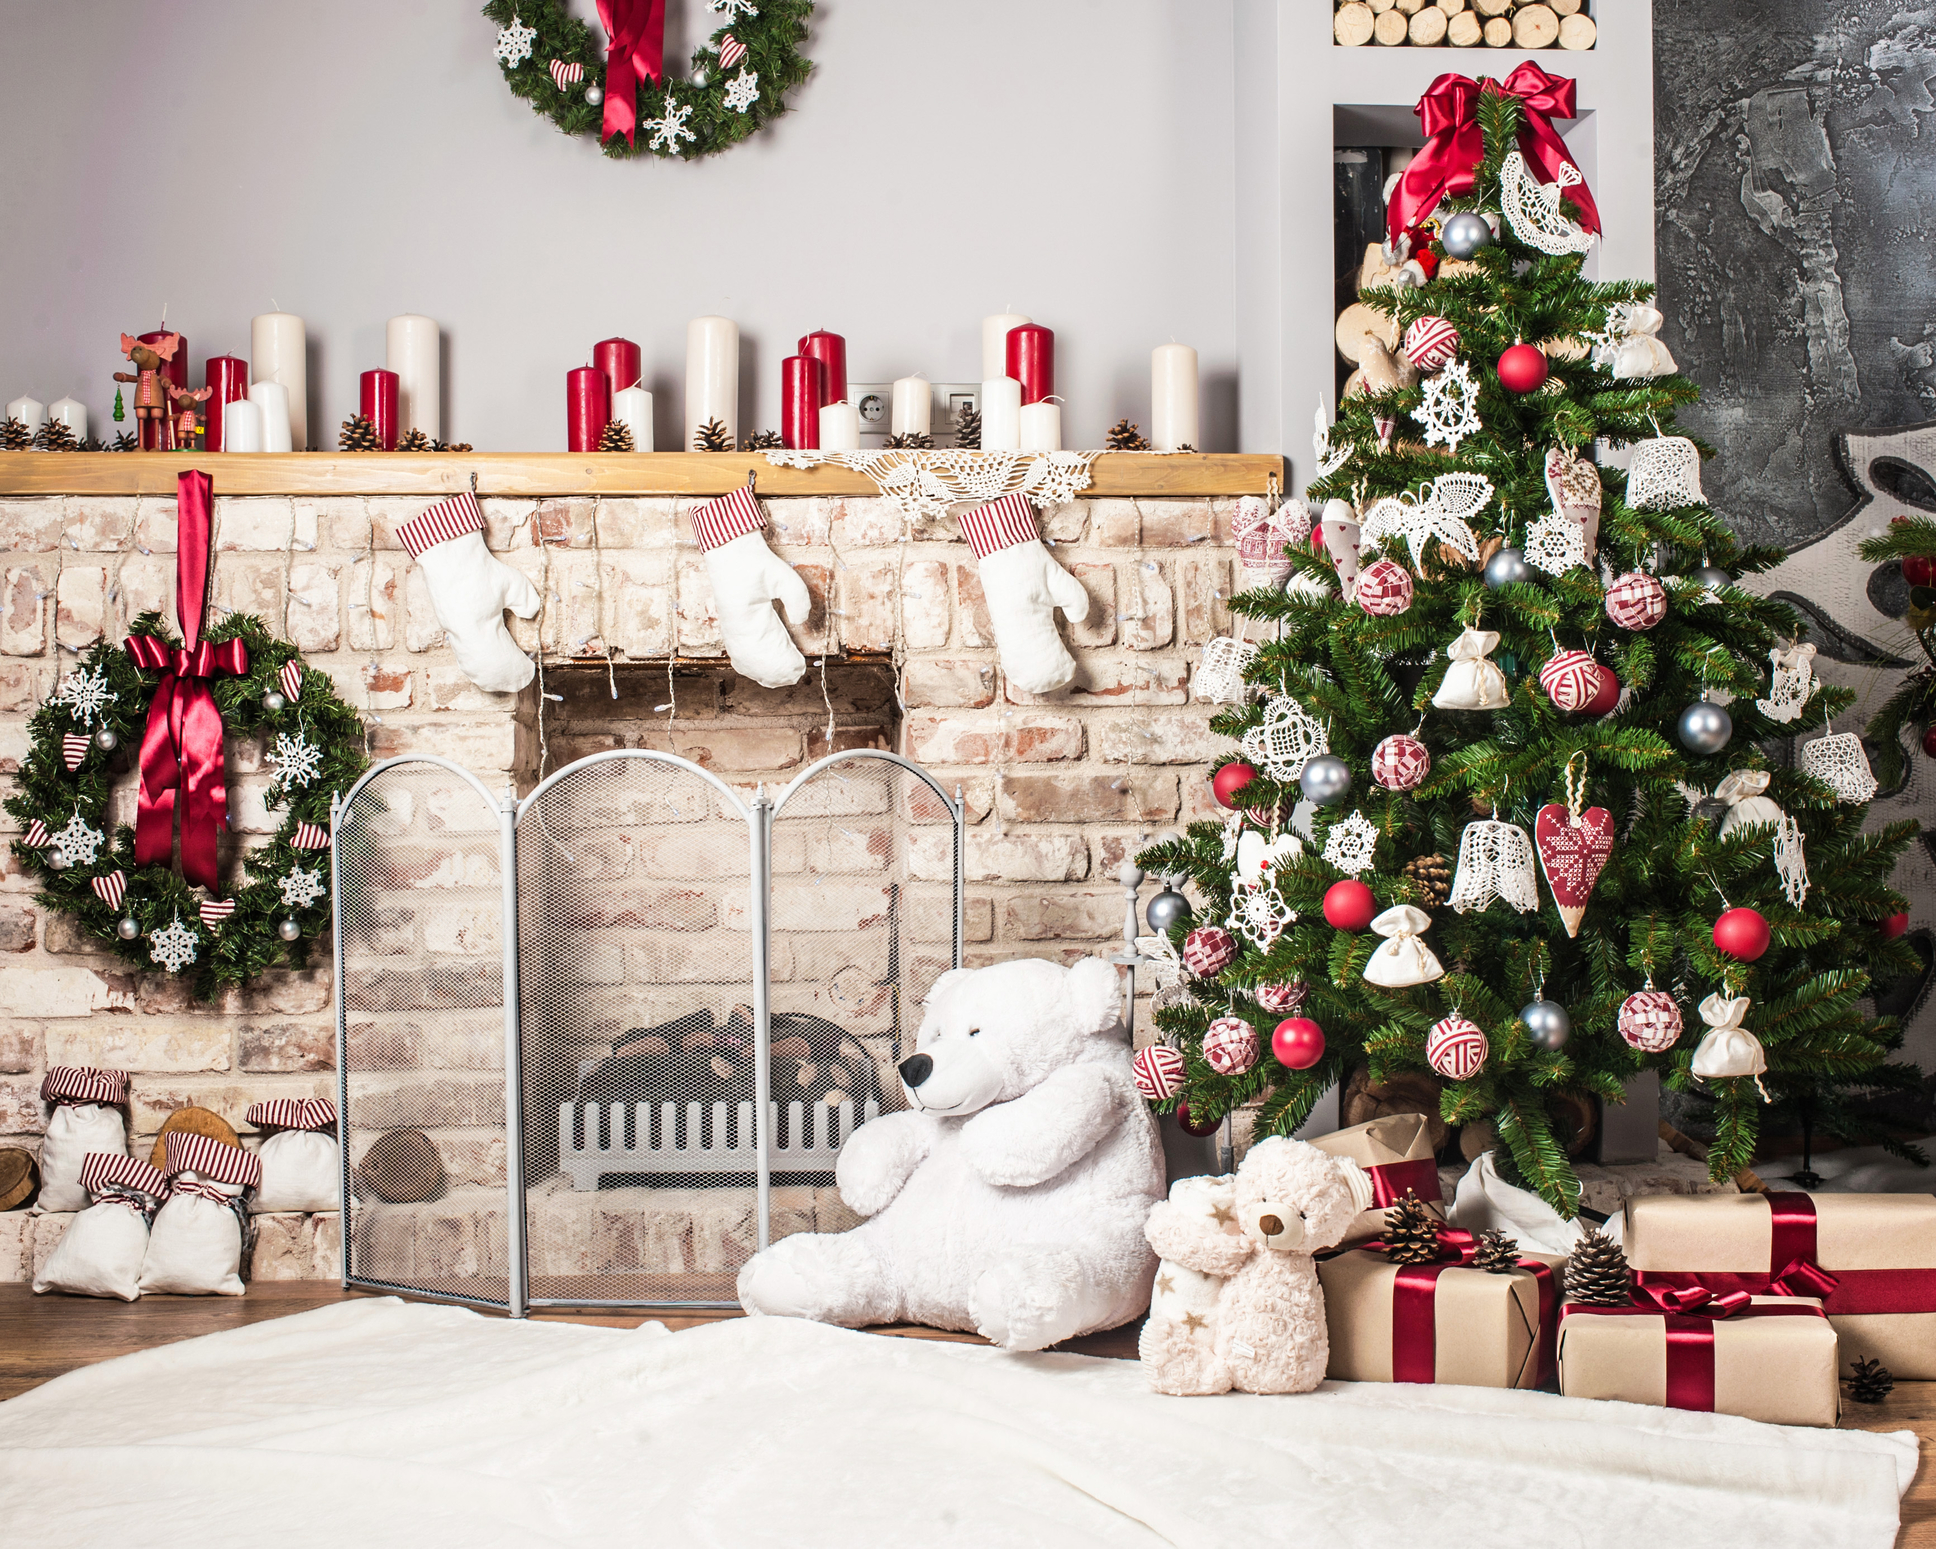 Christmas lounge with Christmas tree